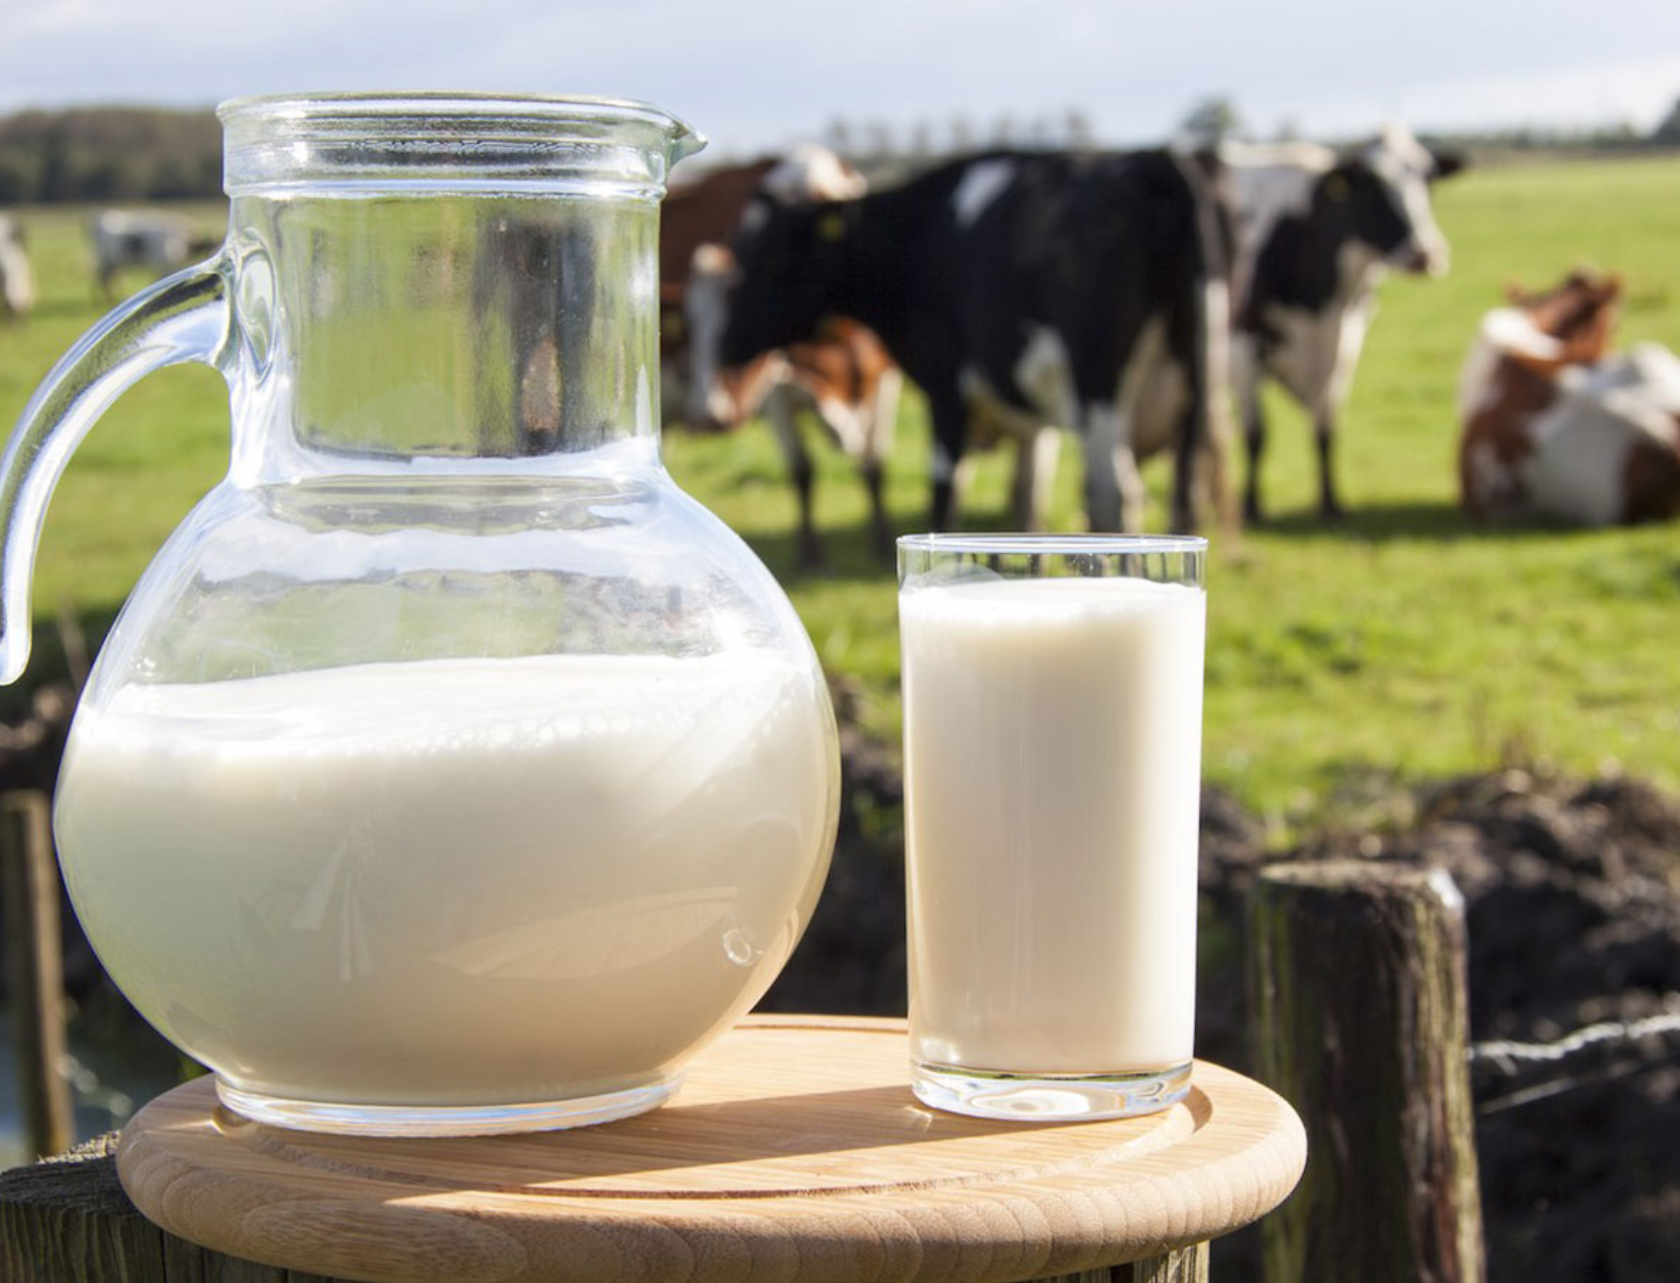 В августе индекс условной доходности производства молока вырос на 3,7%